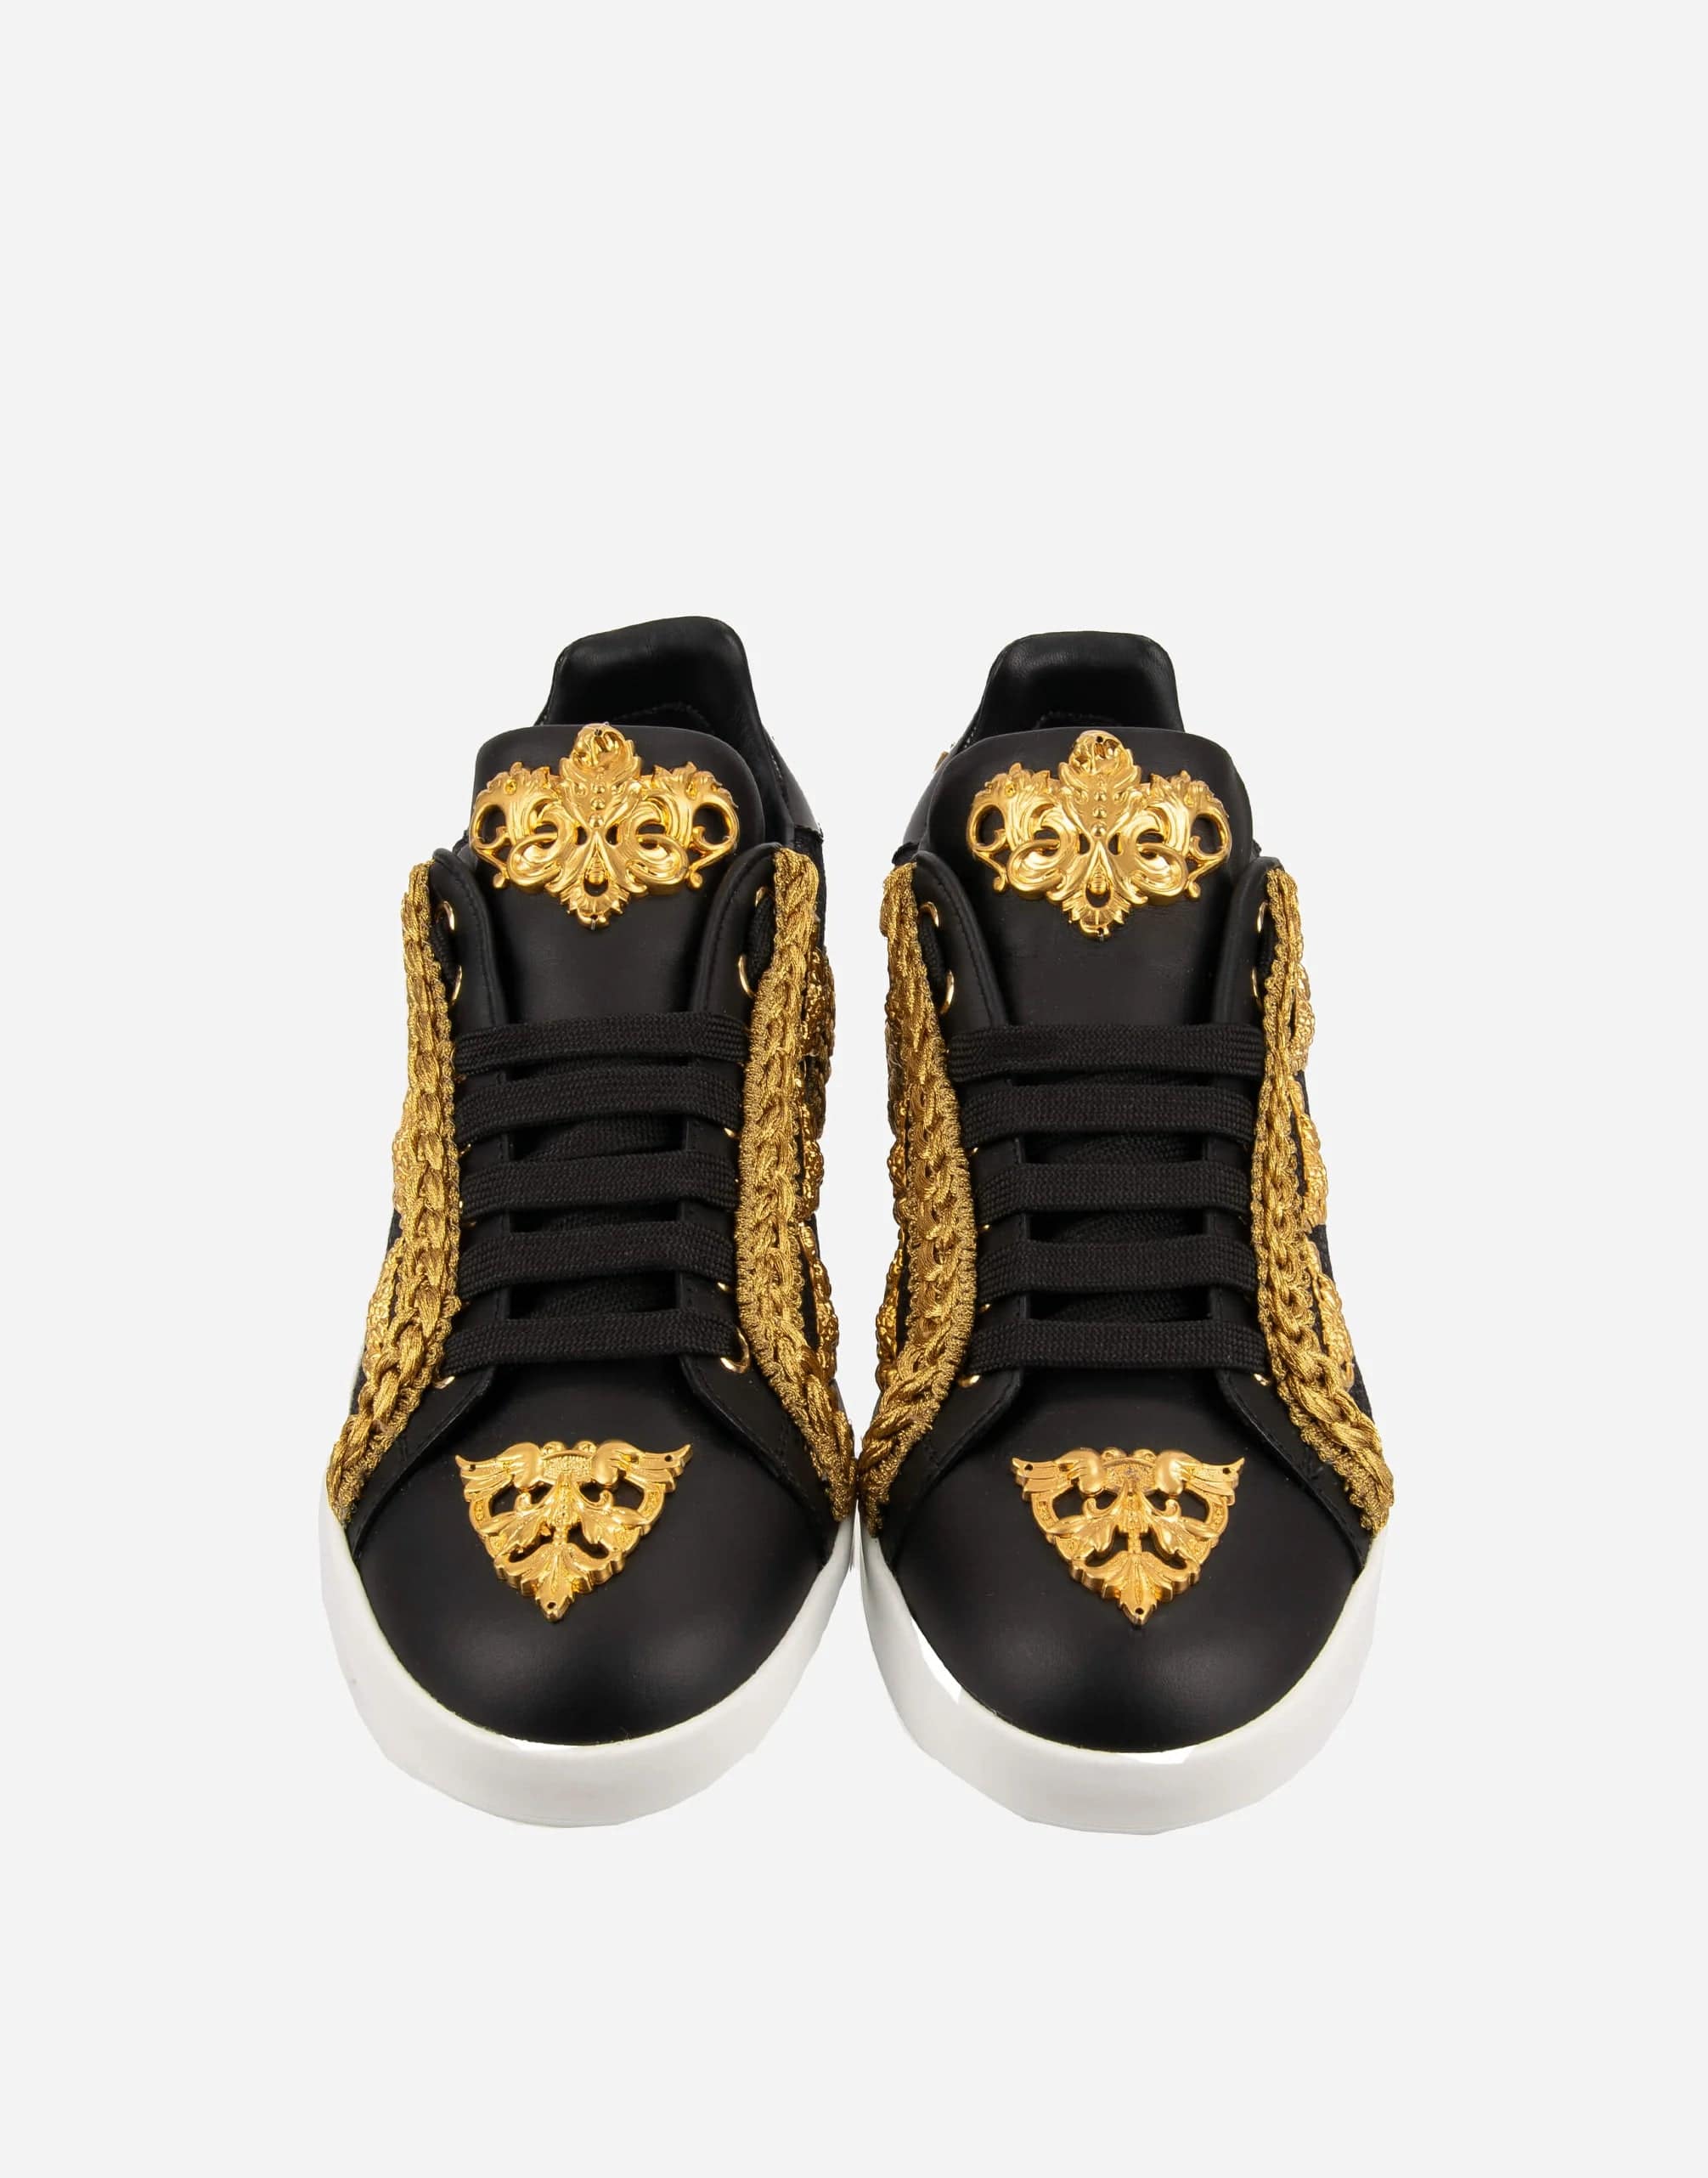 Dolce & Gabbana Dolce & Gabbana Baroque Pearl Portofino Sneakers